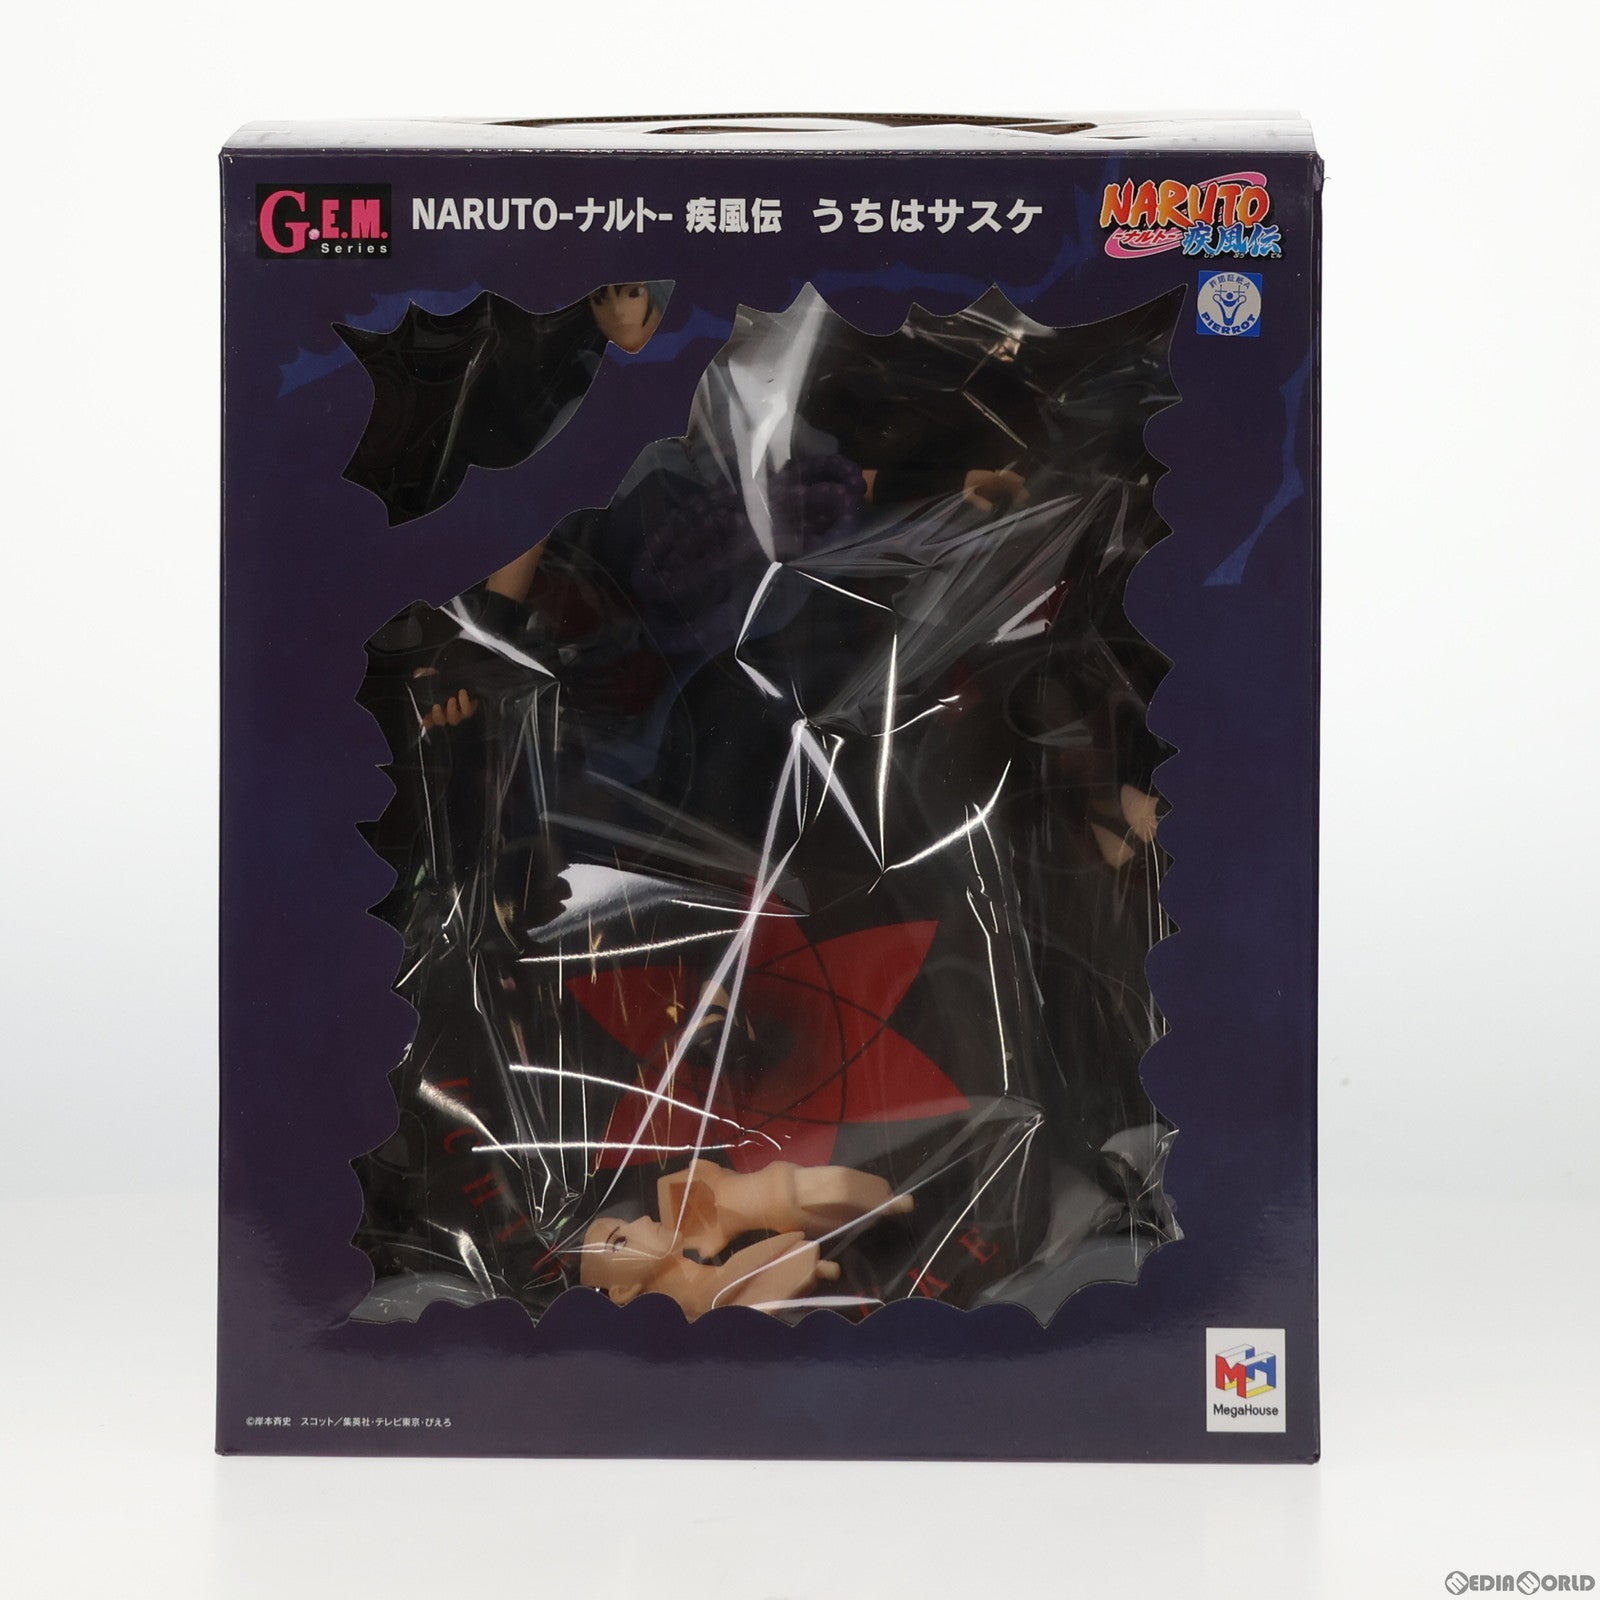 【中古即納】[FIG](再販)G.E.M.シリーズ うちはサスケ NARUTO-ナルト- 疾風伝 完成品 フィギュア メガハウス(20150801)